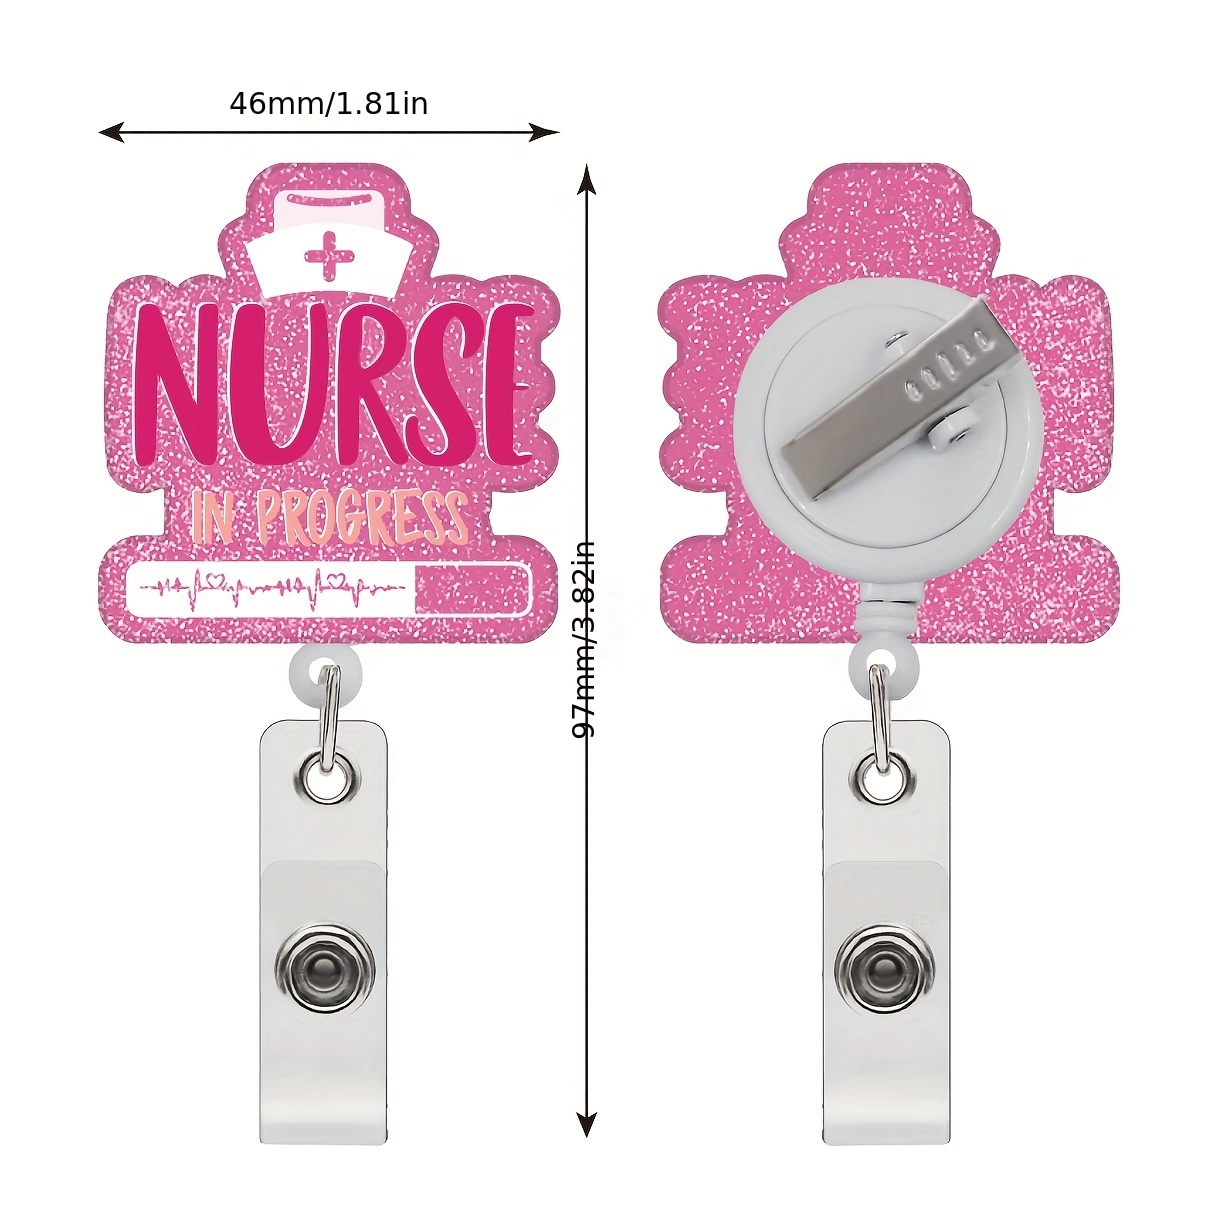 Nurse Badge Reel Retractable (Nurse in Progress) Pink